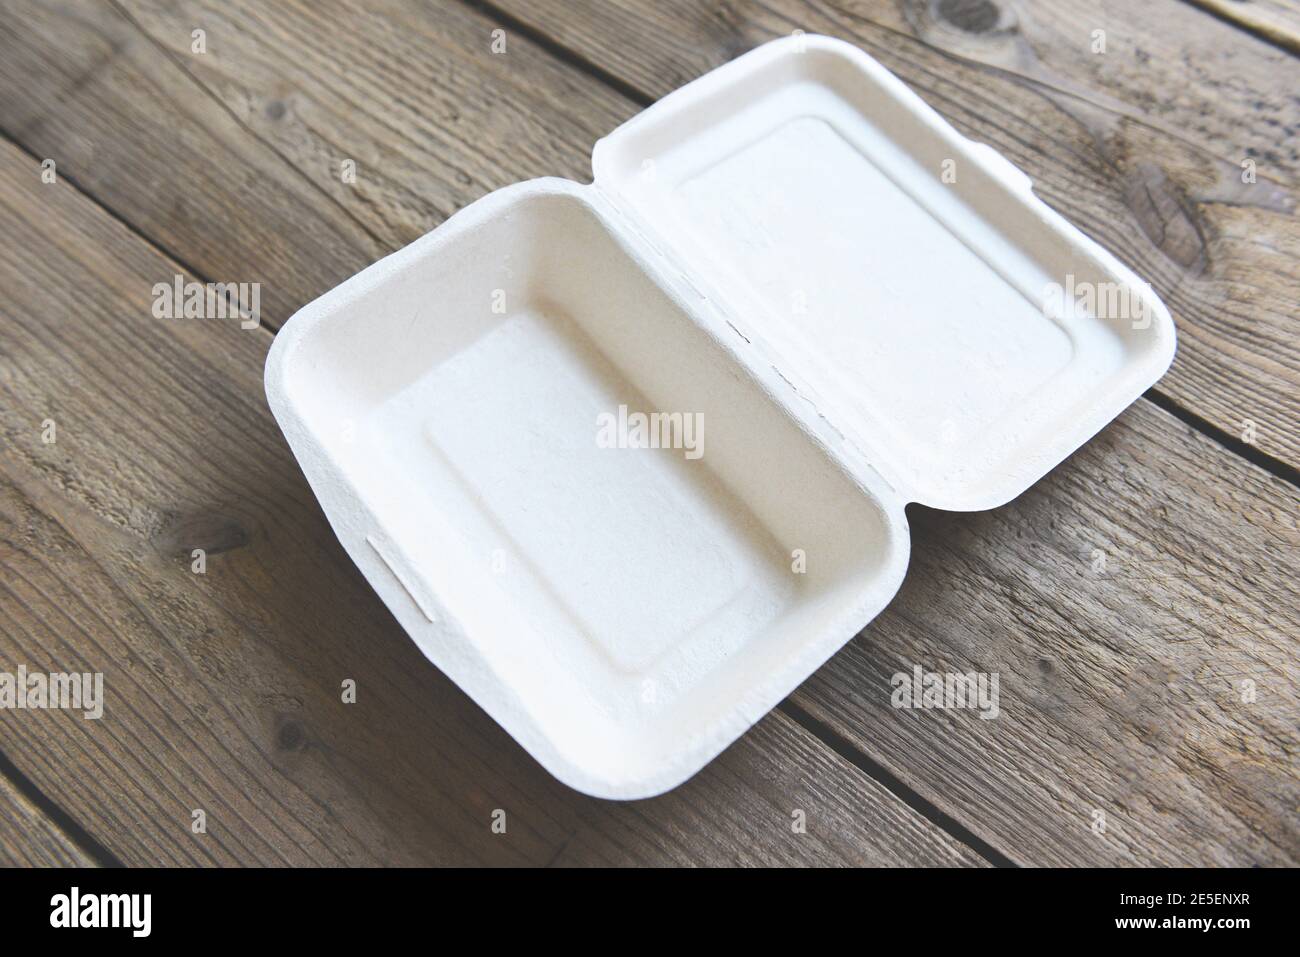 Envases de plástico desechables para alimentos en orden de fondo de madera.  servicio de entrega de comida del restaurante.